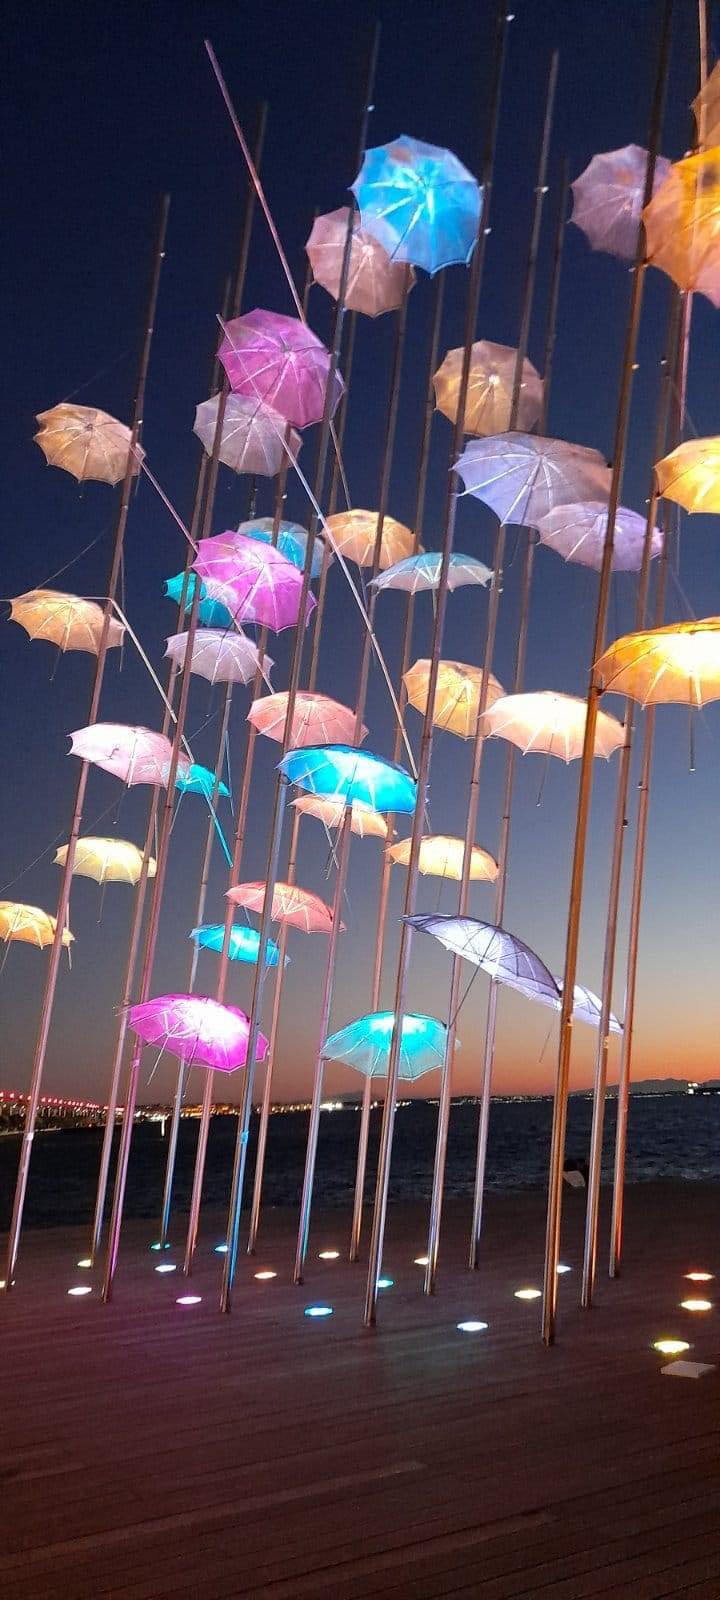 Φωτισμός του γλυπτού "Ομπρέλες". Πηγή φωτογραφίας: Μάκης Κυριζίδης, Facebook